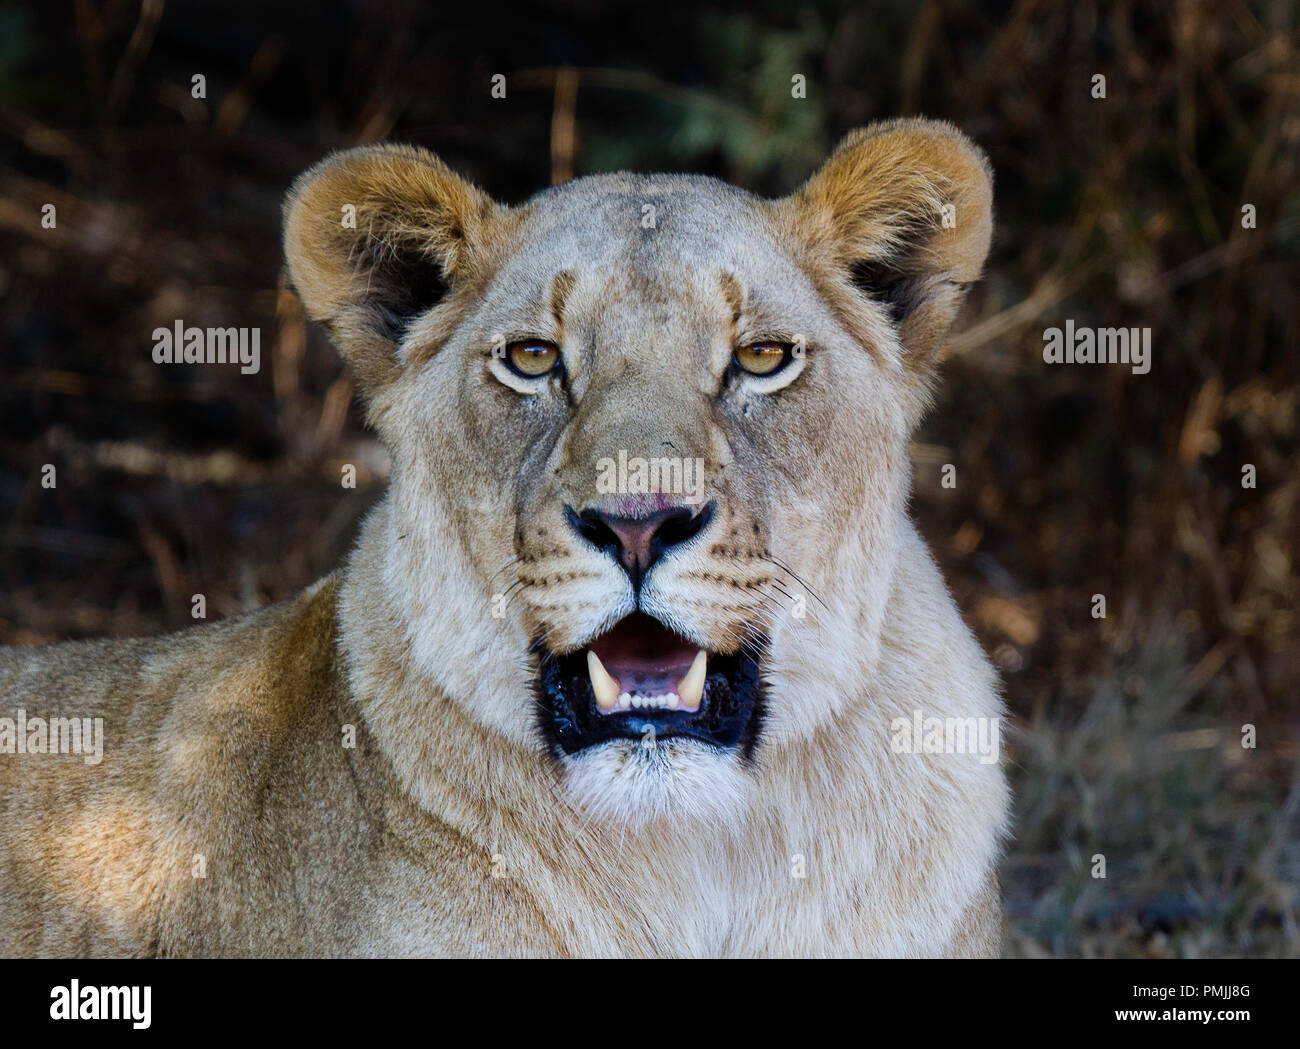 Retrato de una leona mostrando los colmillos. Fotografía tomada en Sudáfrica Foto de stock